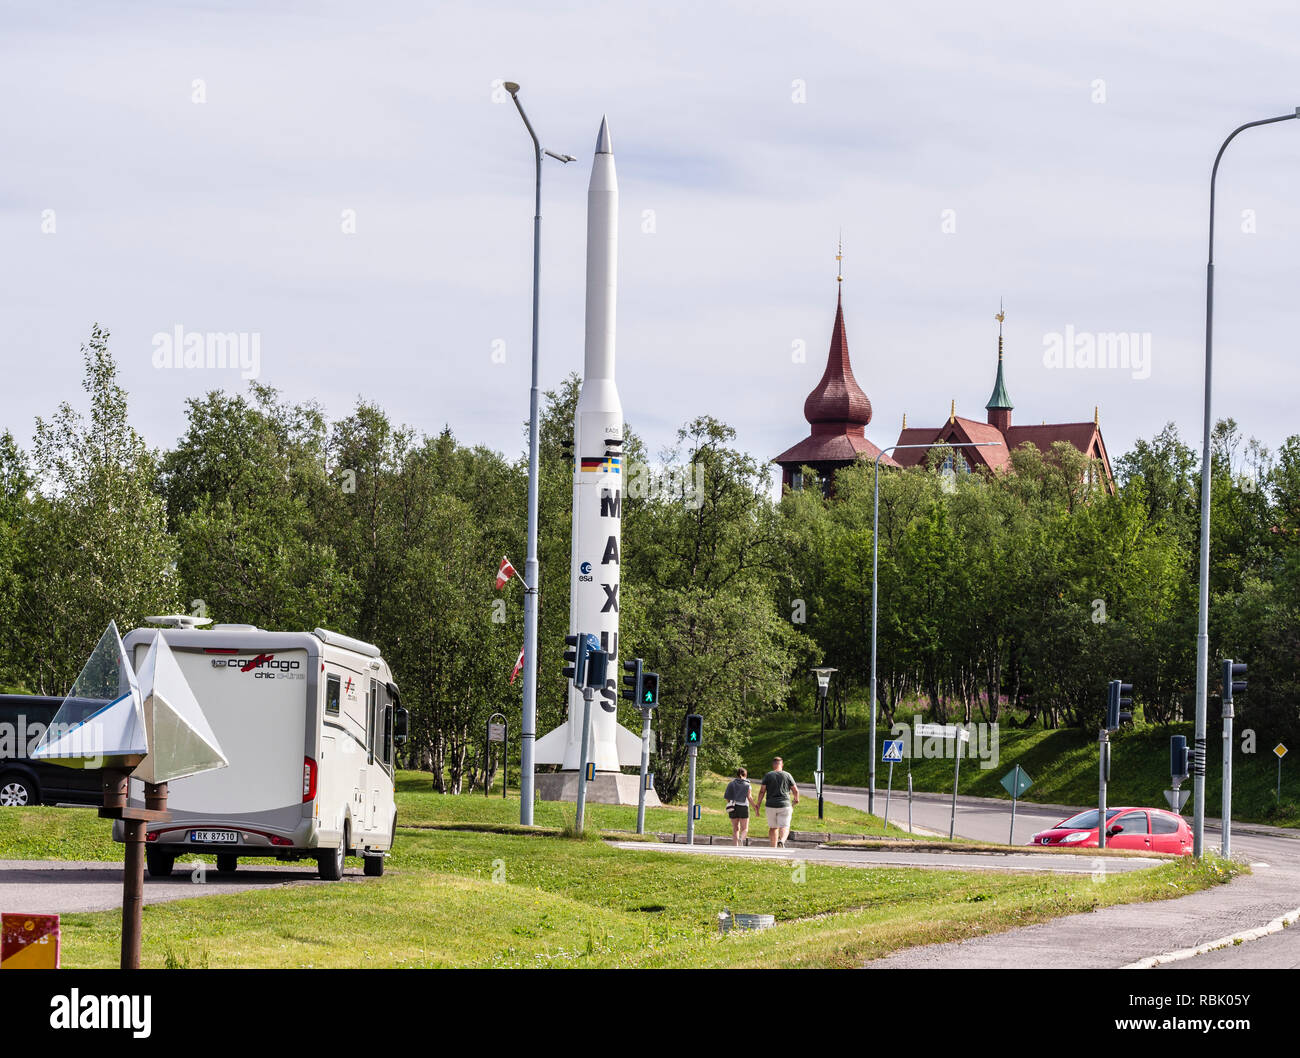 Rakete in der europäischen Forschung Programm der ESA, Kiruna Kirche in der Rückseite, Park in Kiruna, Schweden Stockfoto